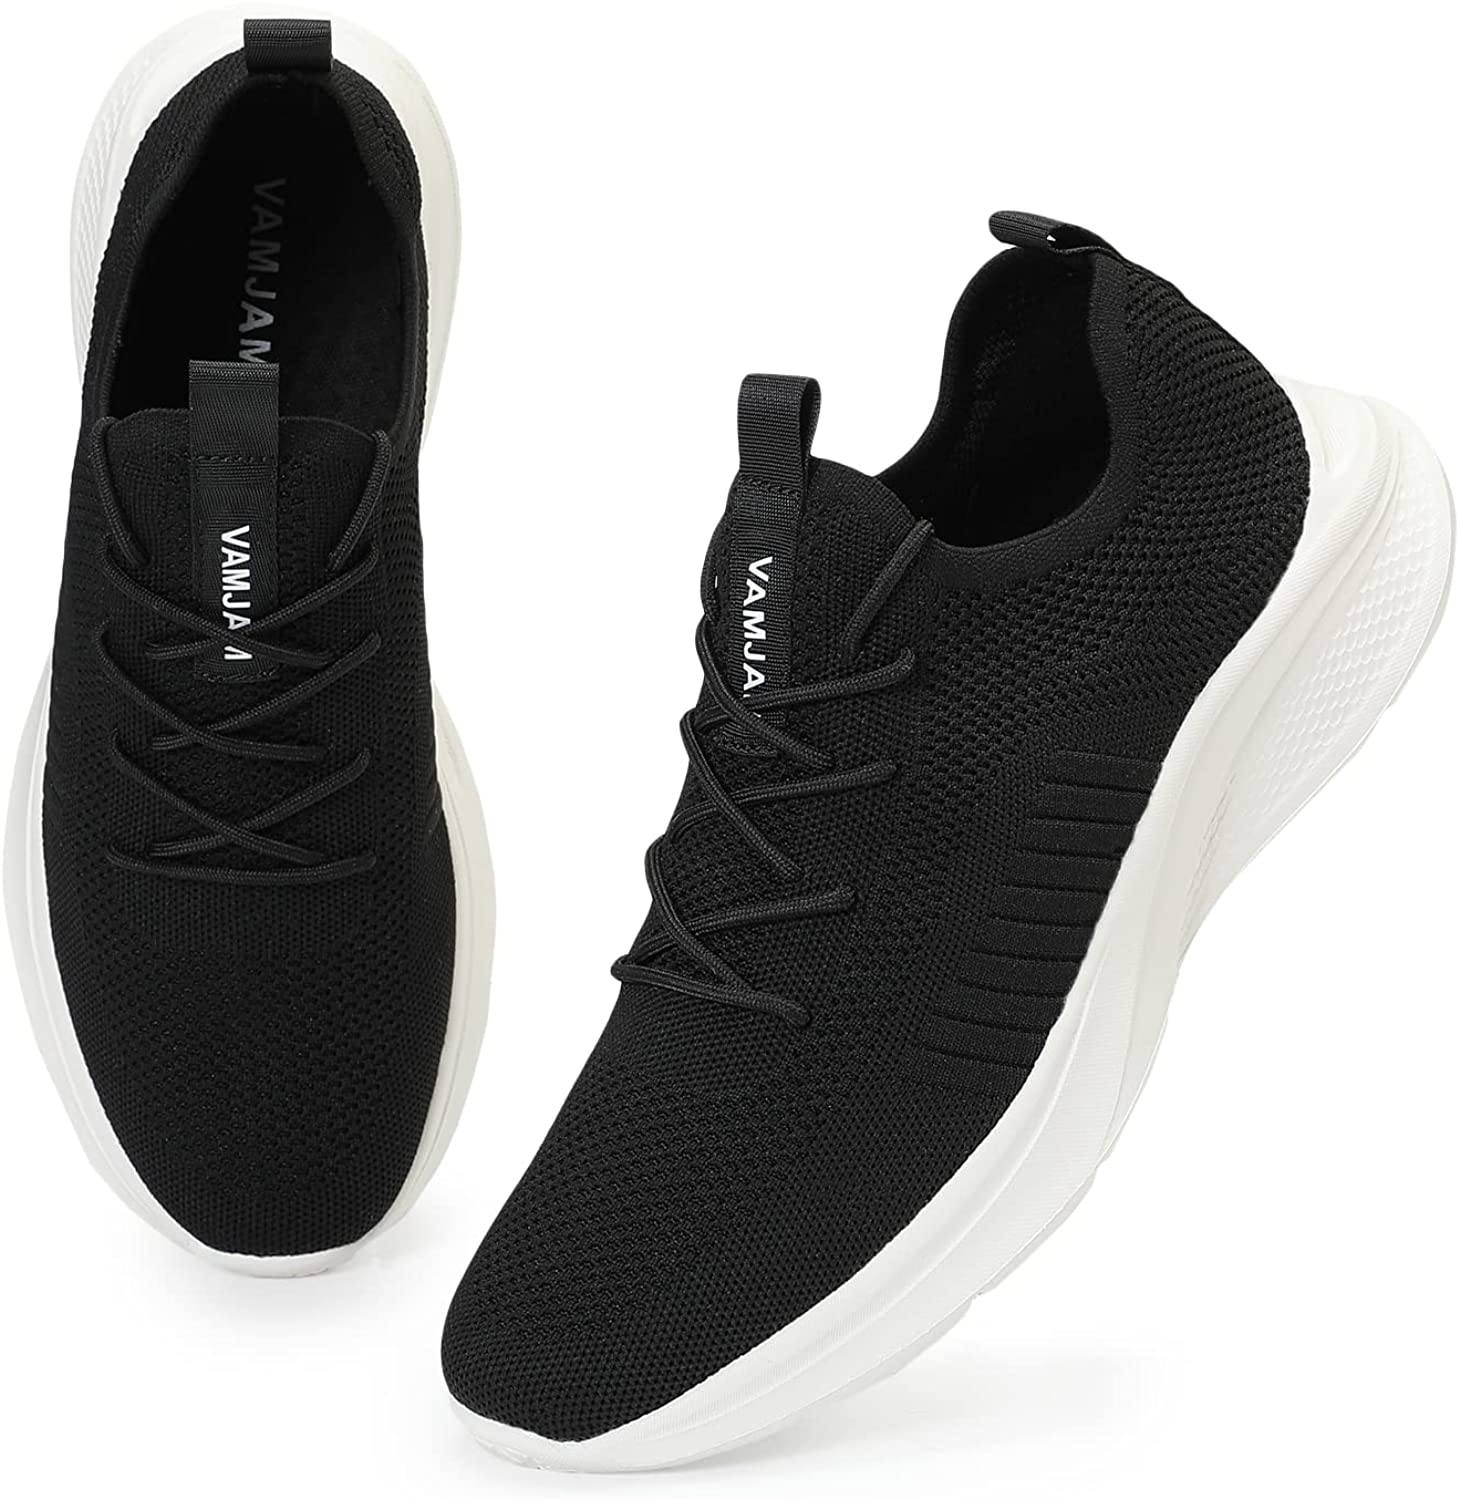  JiuQing Men's Chunky Running Shoes Mesh Casual Sneaker  Lightweight Non-Slip Cross Sports Shoes,Black,5